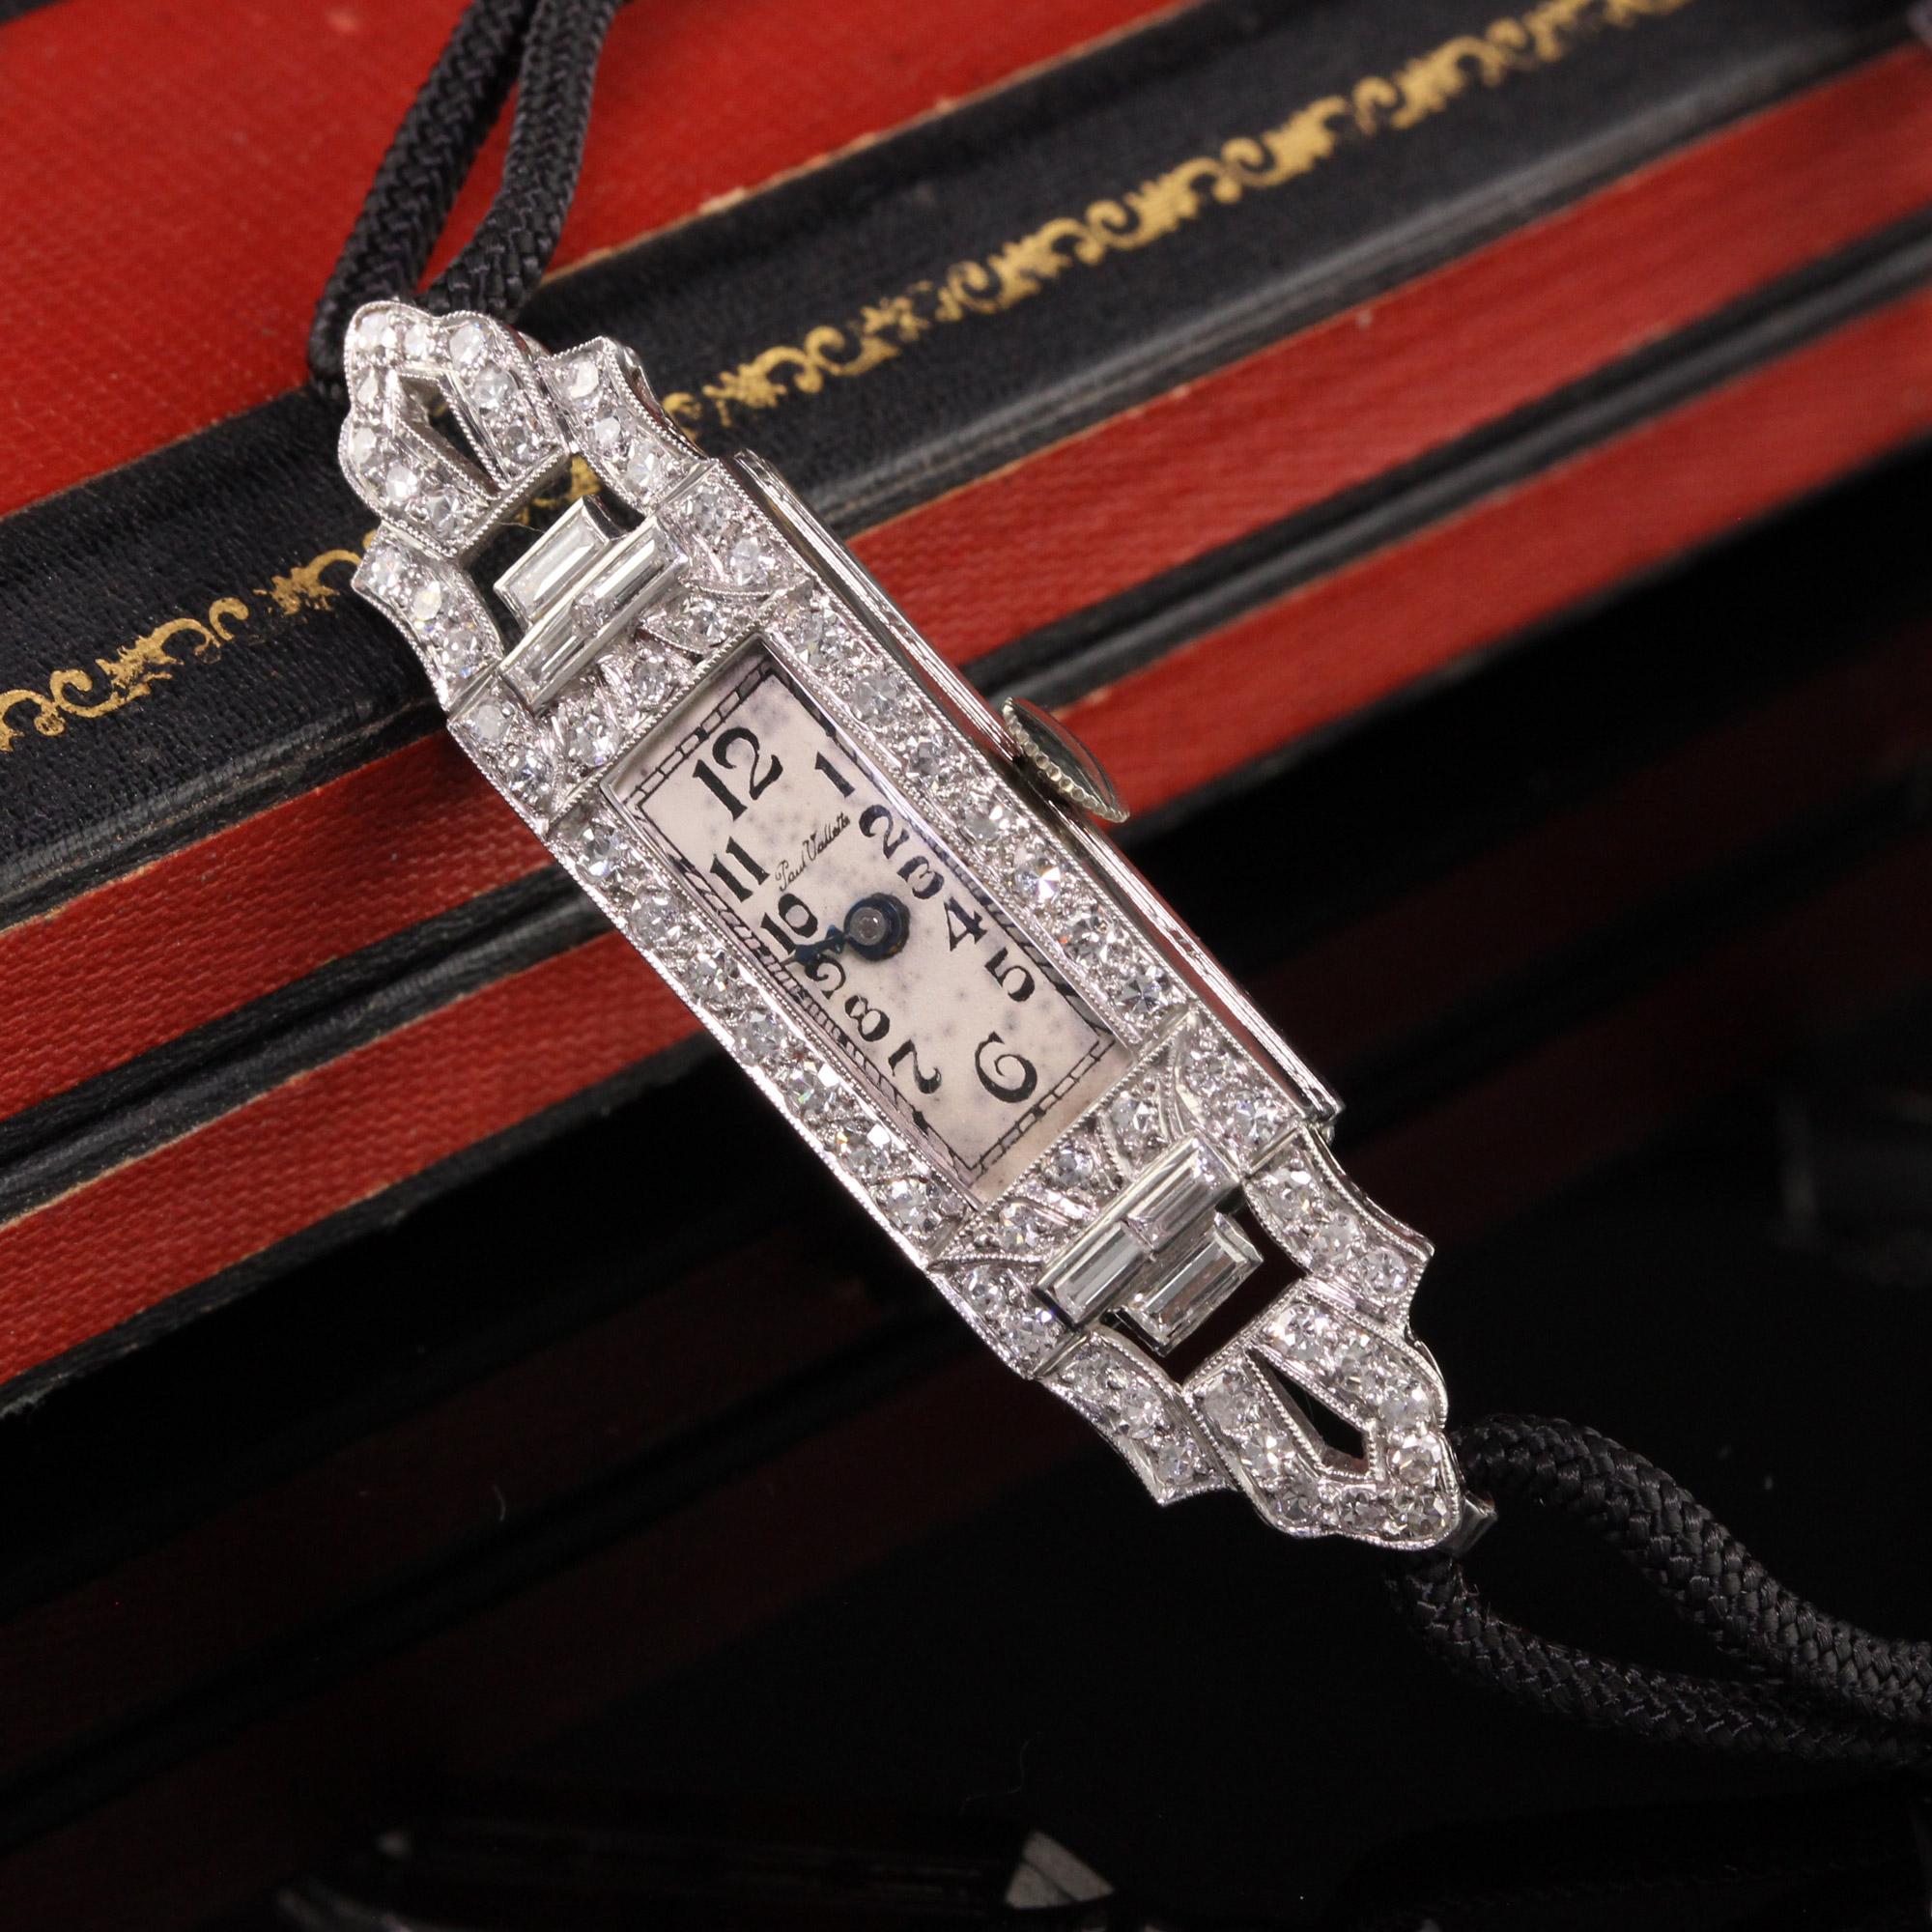 Schöne antike Art Deco Paul Vallette Diamant Baguette Abenduhr. Diese schöne Uhr ist in erstaunlichem Zustand und läuft. Das Armband der Uhr ist eine Kordel mit einer unedlen Metallschließe.

Artikel #W0005

Metall: Platin

Gewicht: 14,8